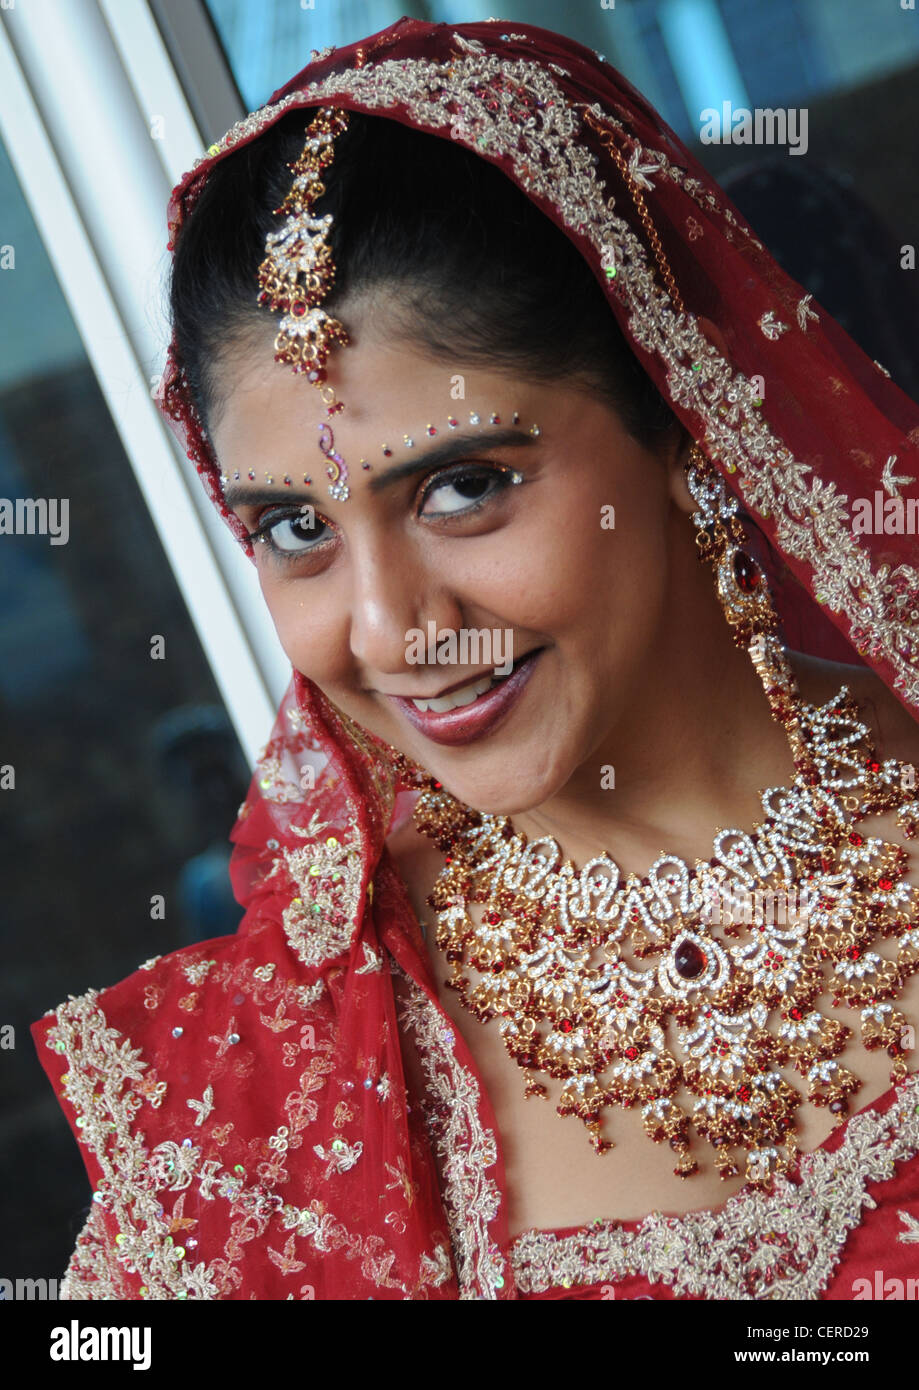 Jeune danseuse indienne en costume et bijoux exquis effectuant la danse de mariage avec ses yeux montrant des gestes de l'amour. Banque D'Images